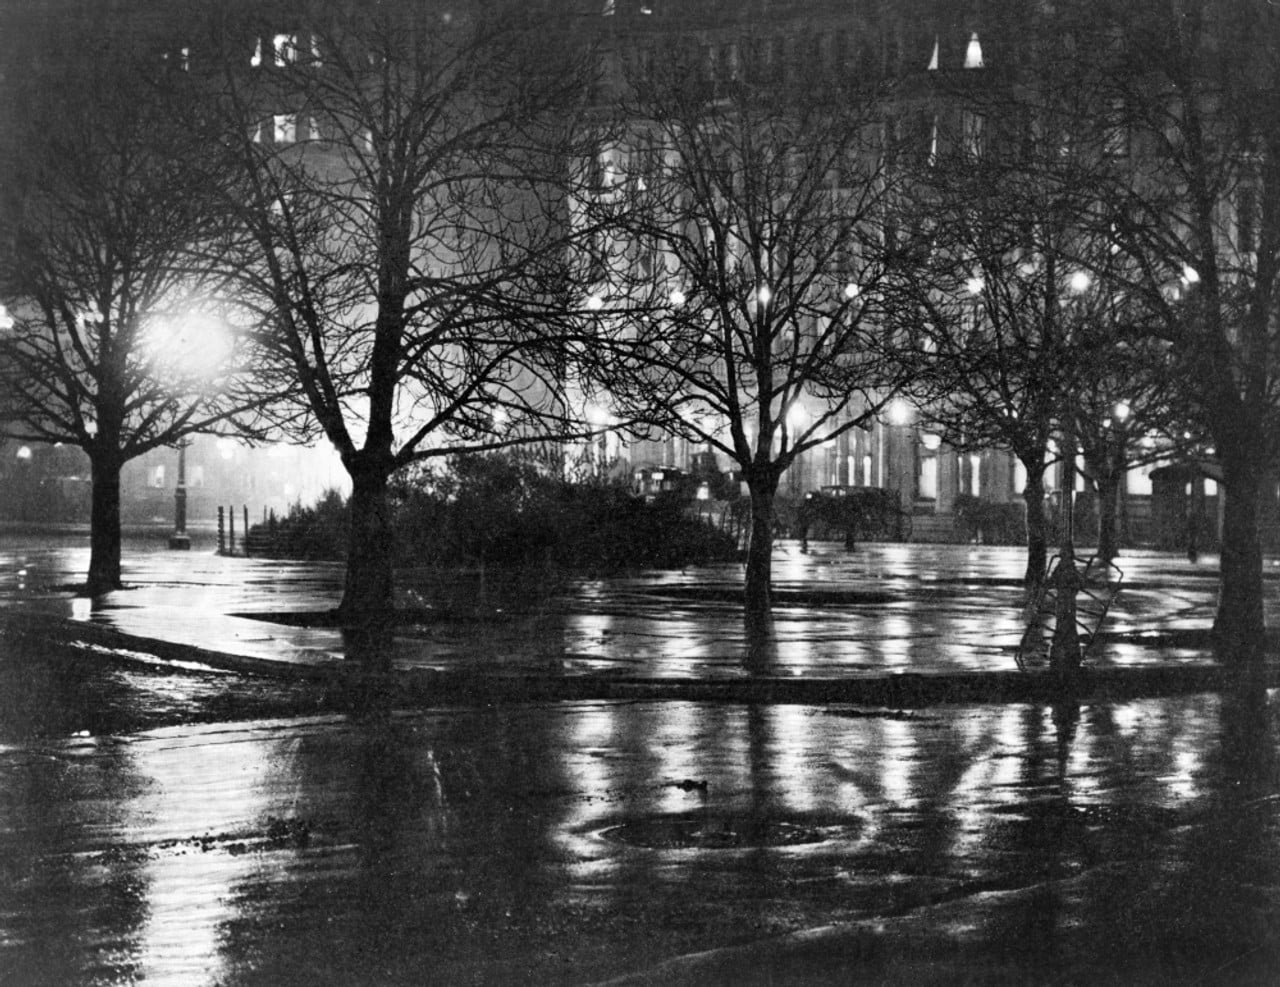 Architettura e paesaggio nella fotografia Alfred Stieglitz. New York Reflections In A Park At Night